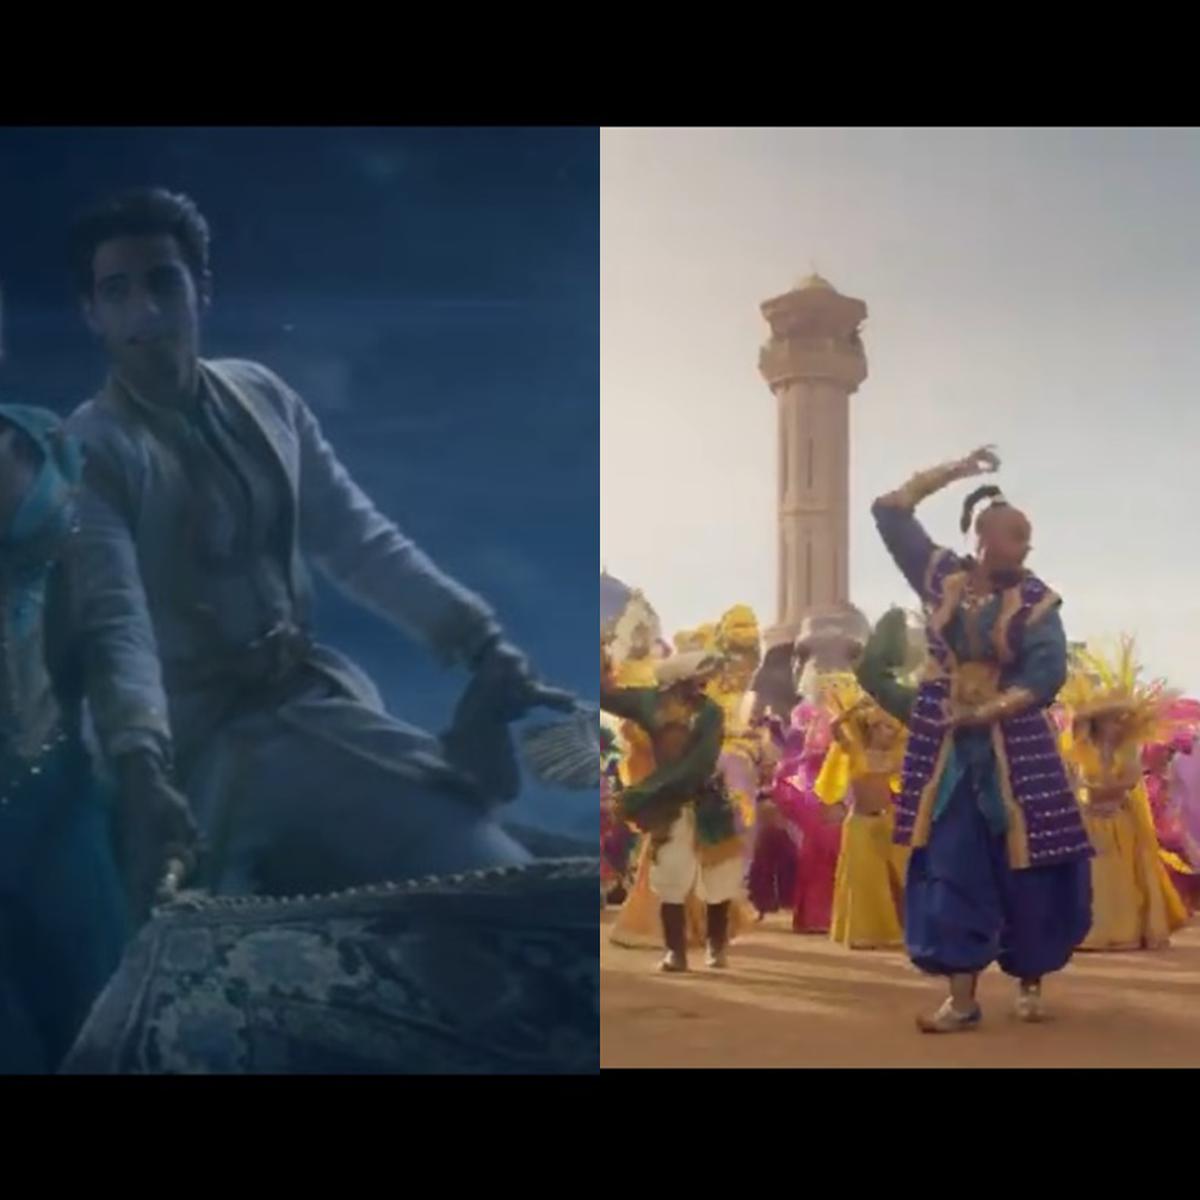 Detalles del tráiler de Aladdin que quizá no viste